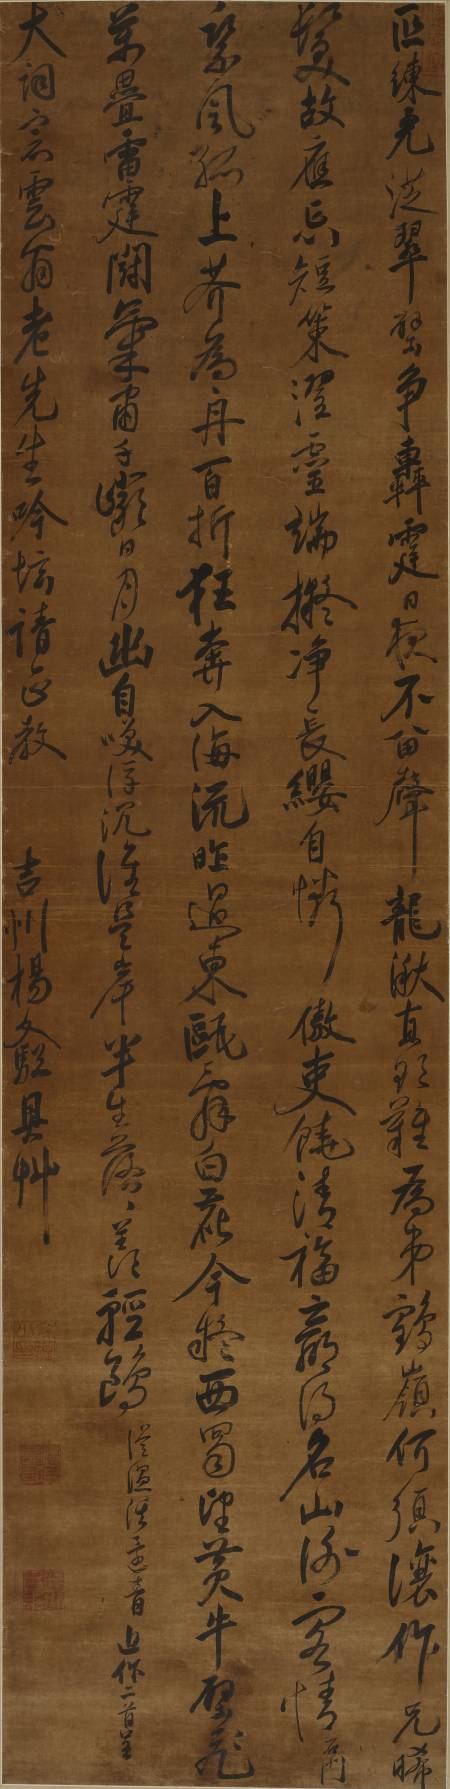 楊文驄《行書七律二首軸》218 x 54 cm